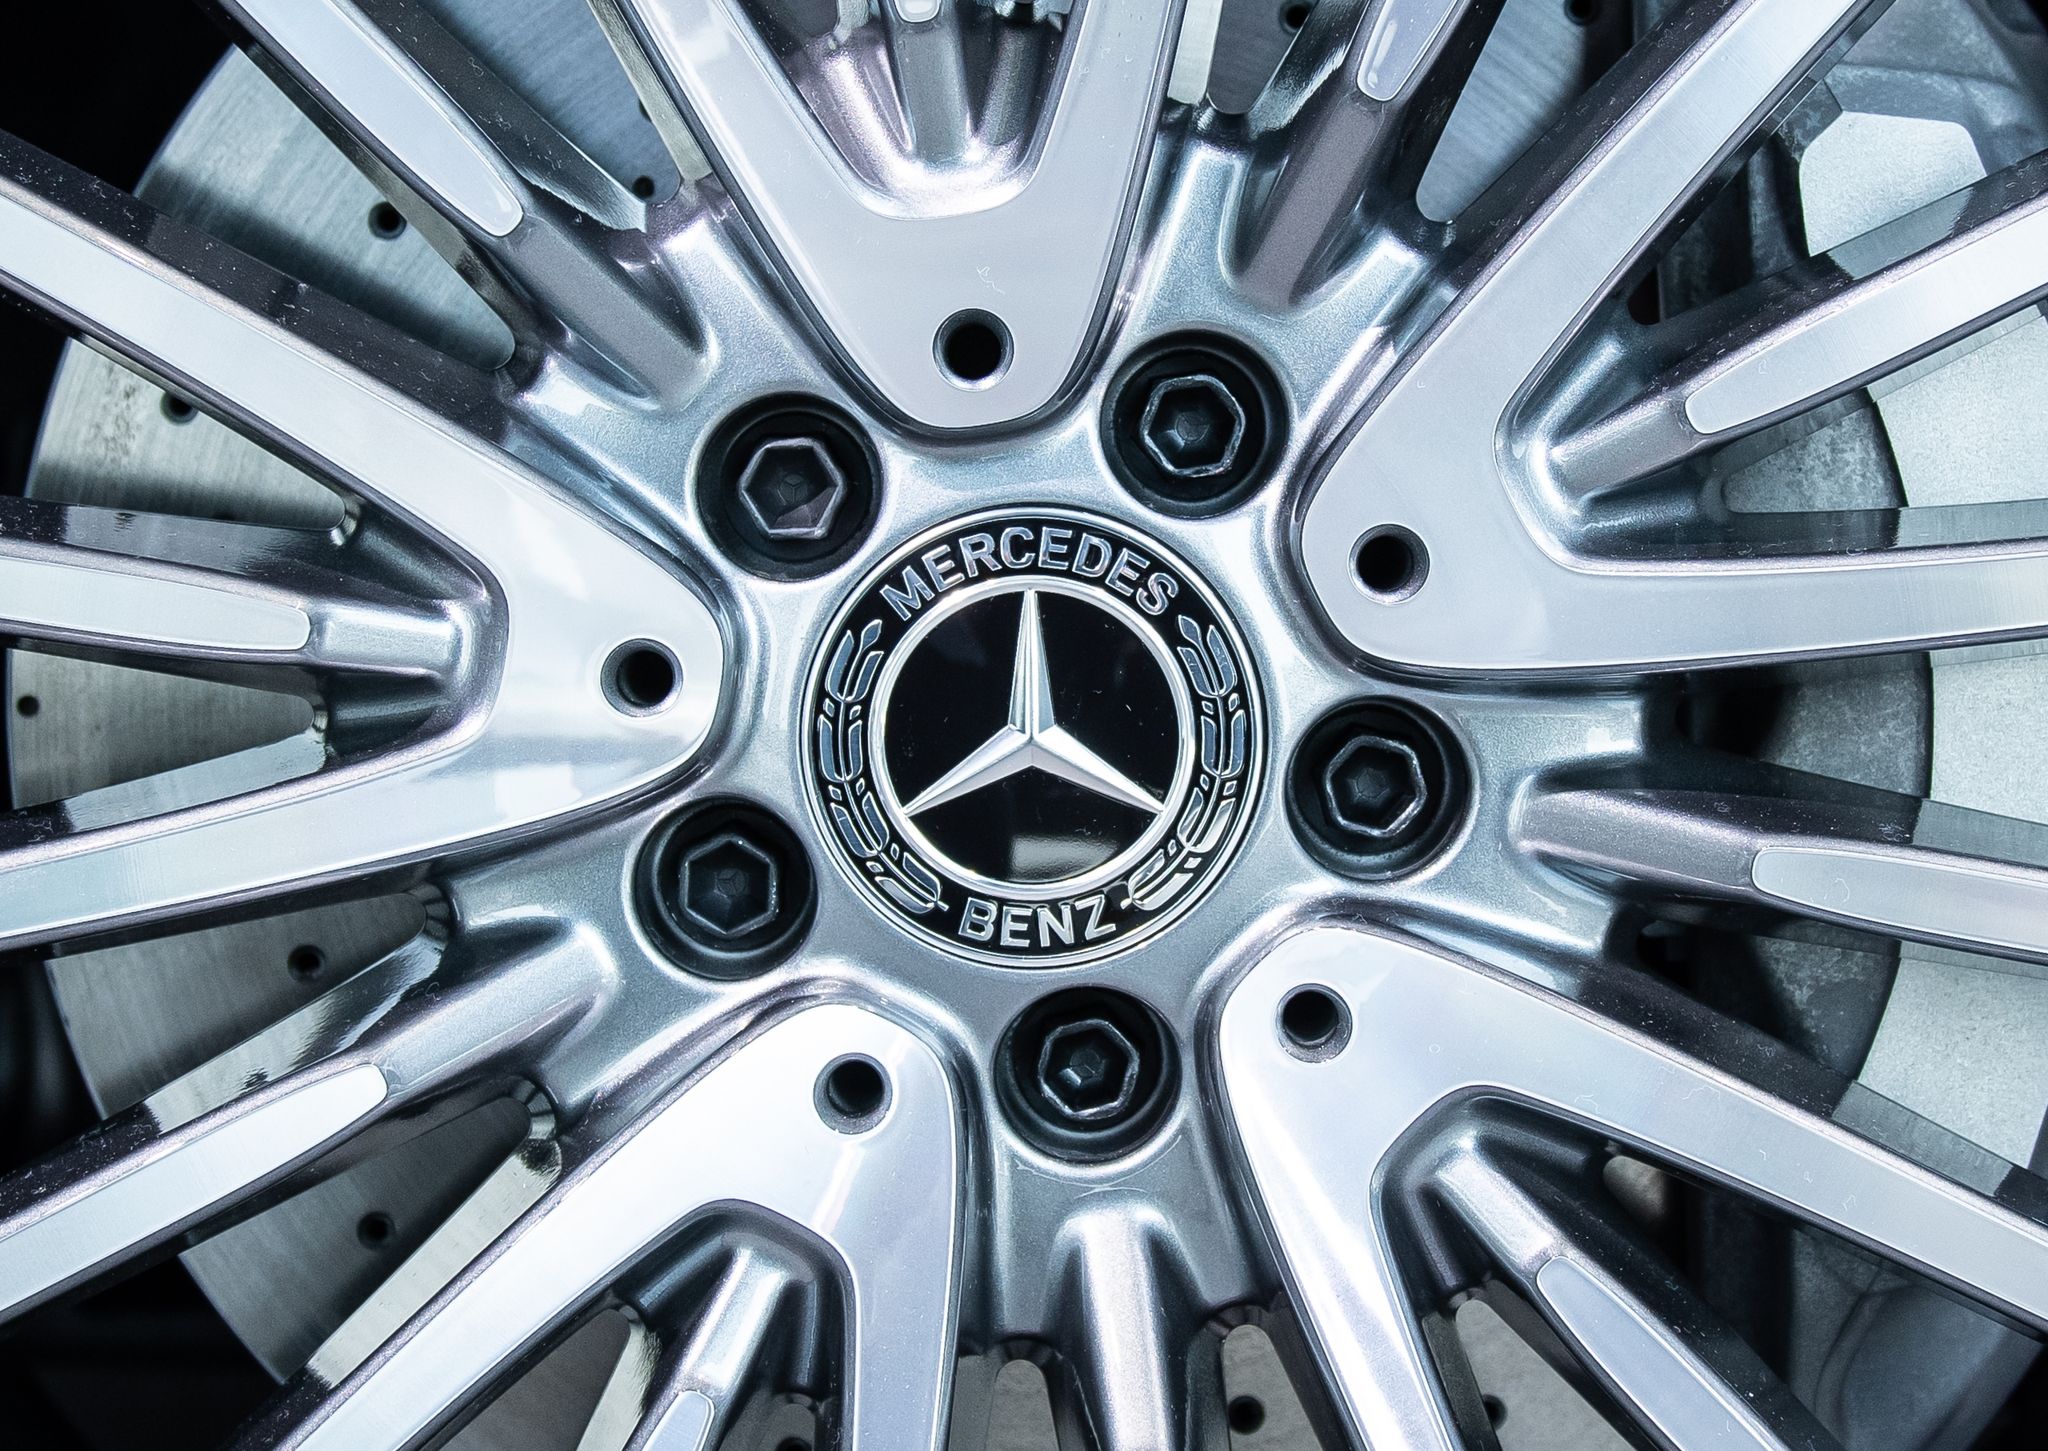 Mercedes Benz Verkauft Weniger Autos